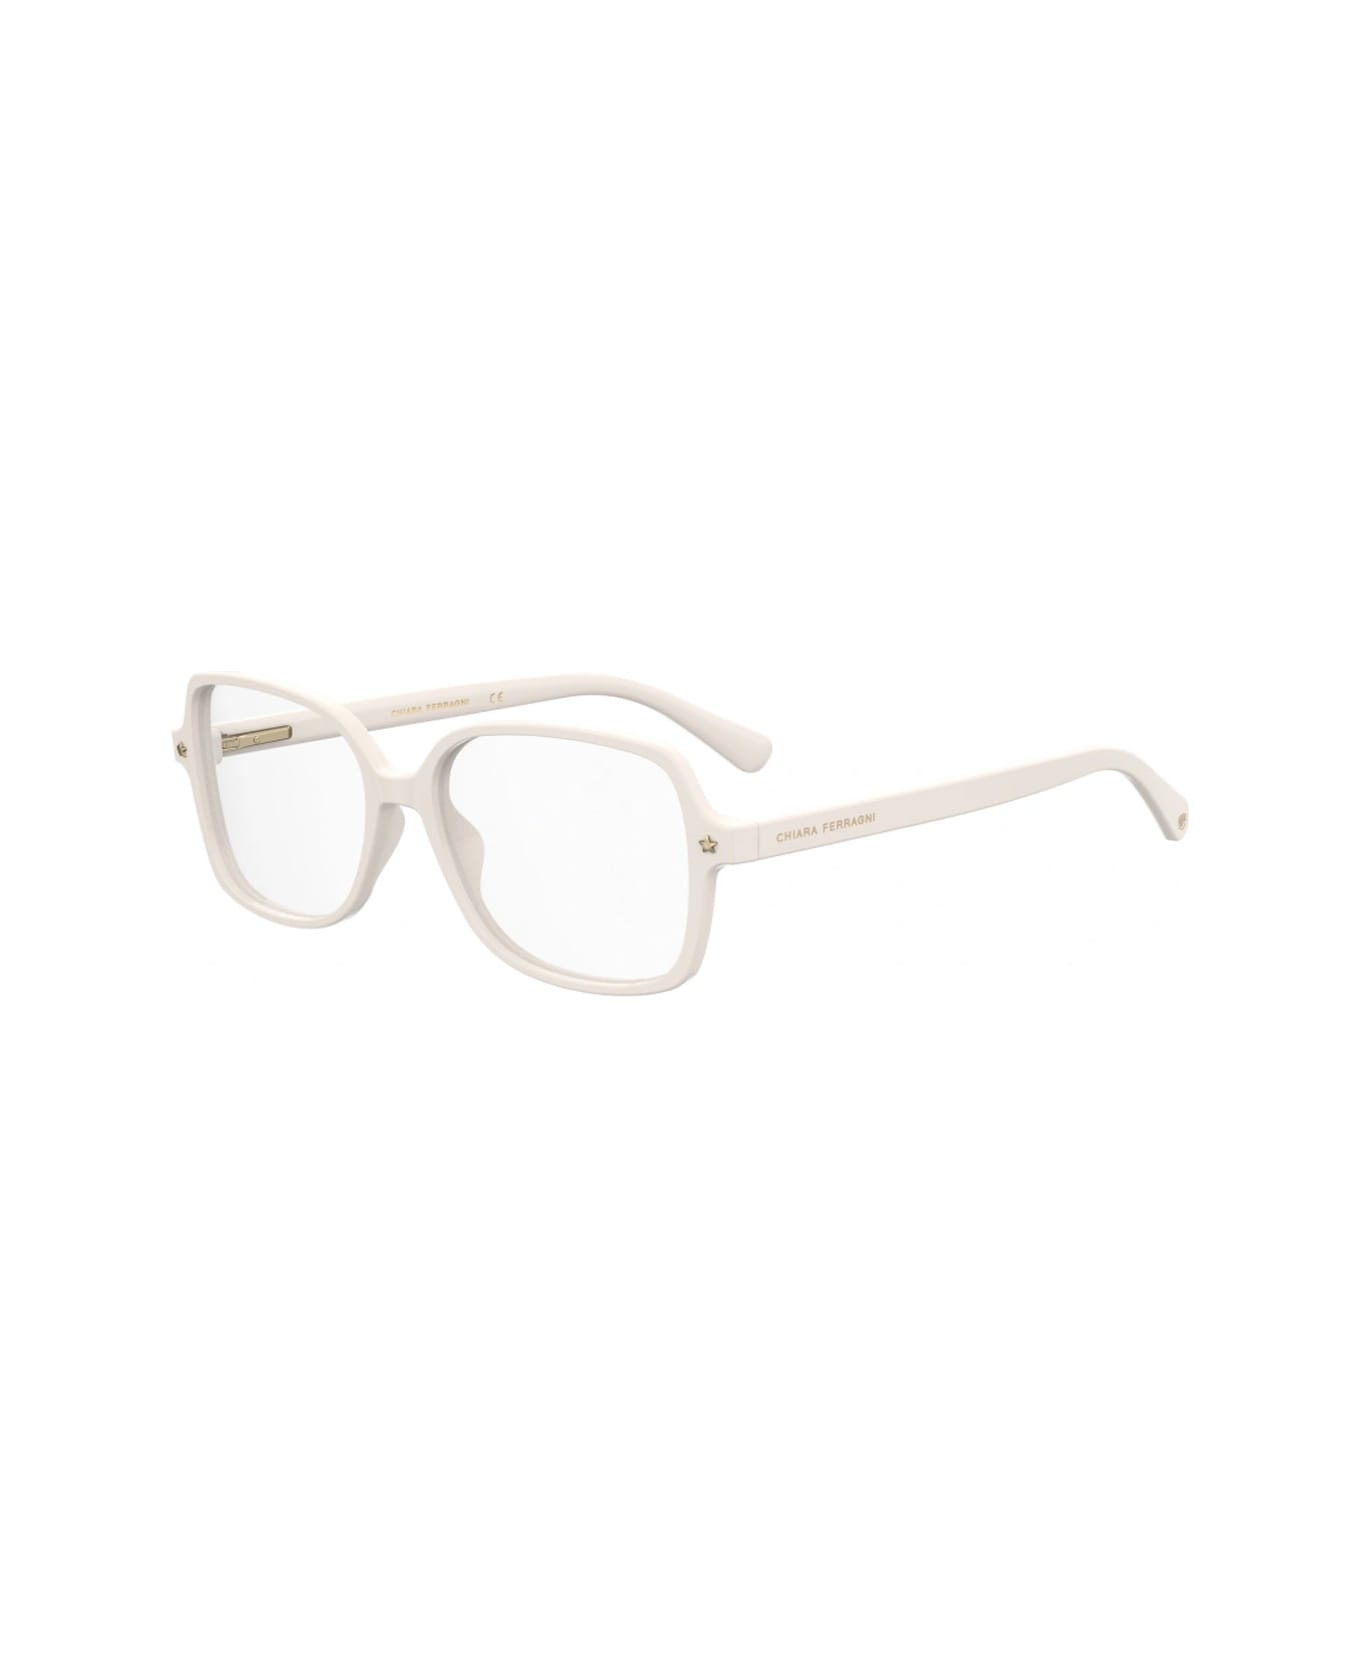 Chiara Ferragni Cf 1026 Vk6/16 White Glasses - Bianco アイウェア